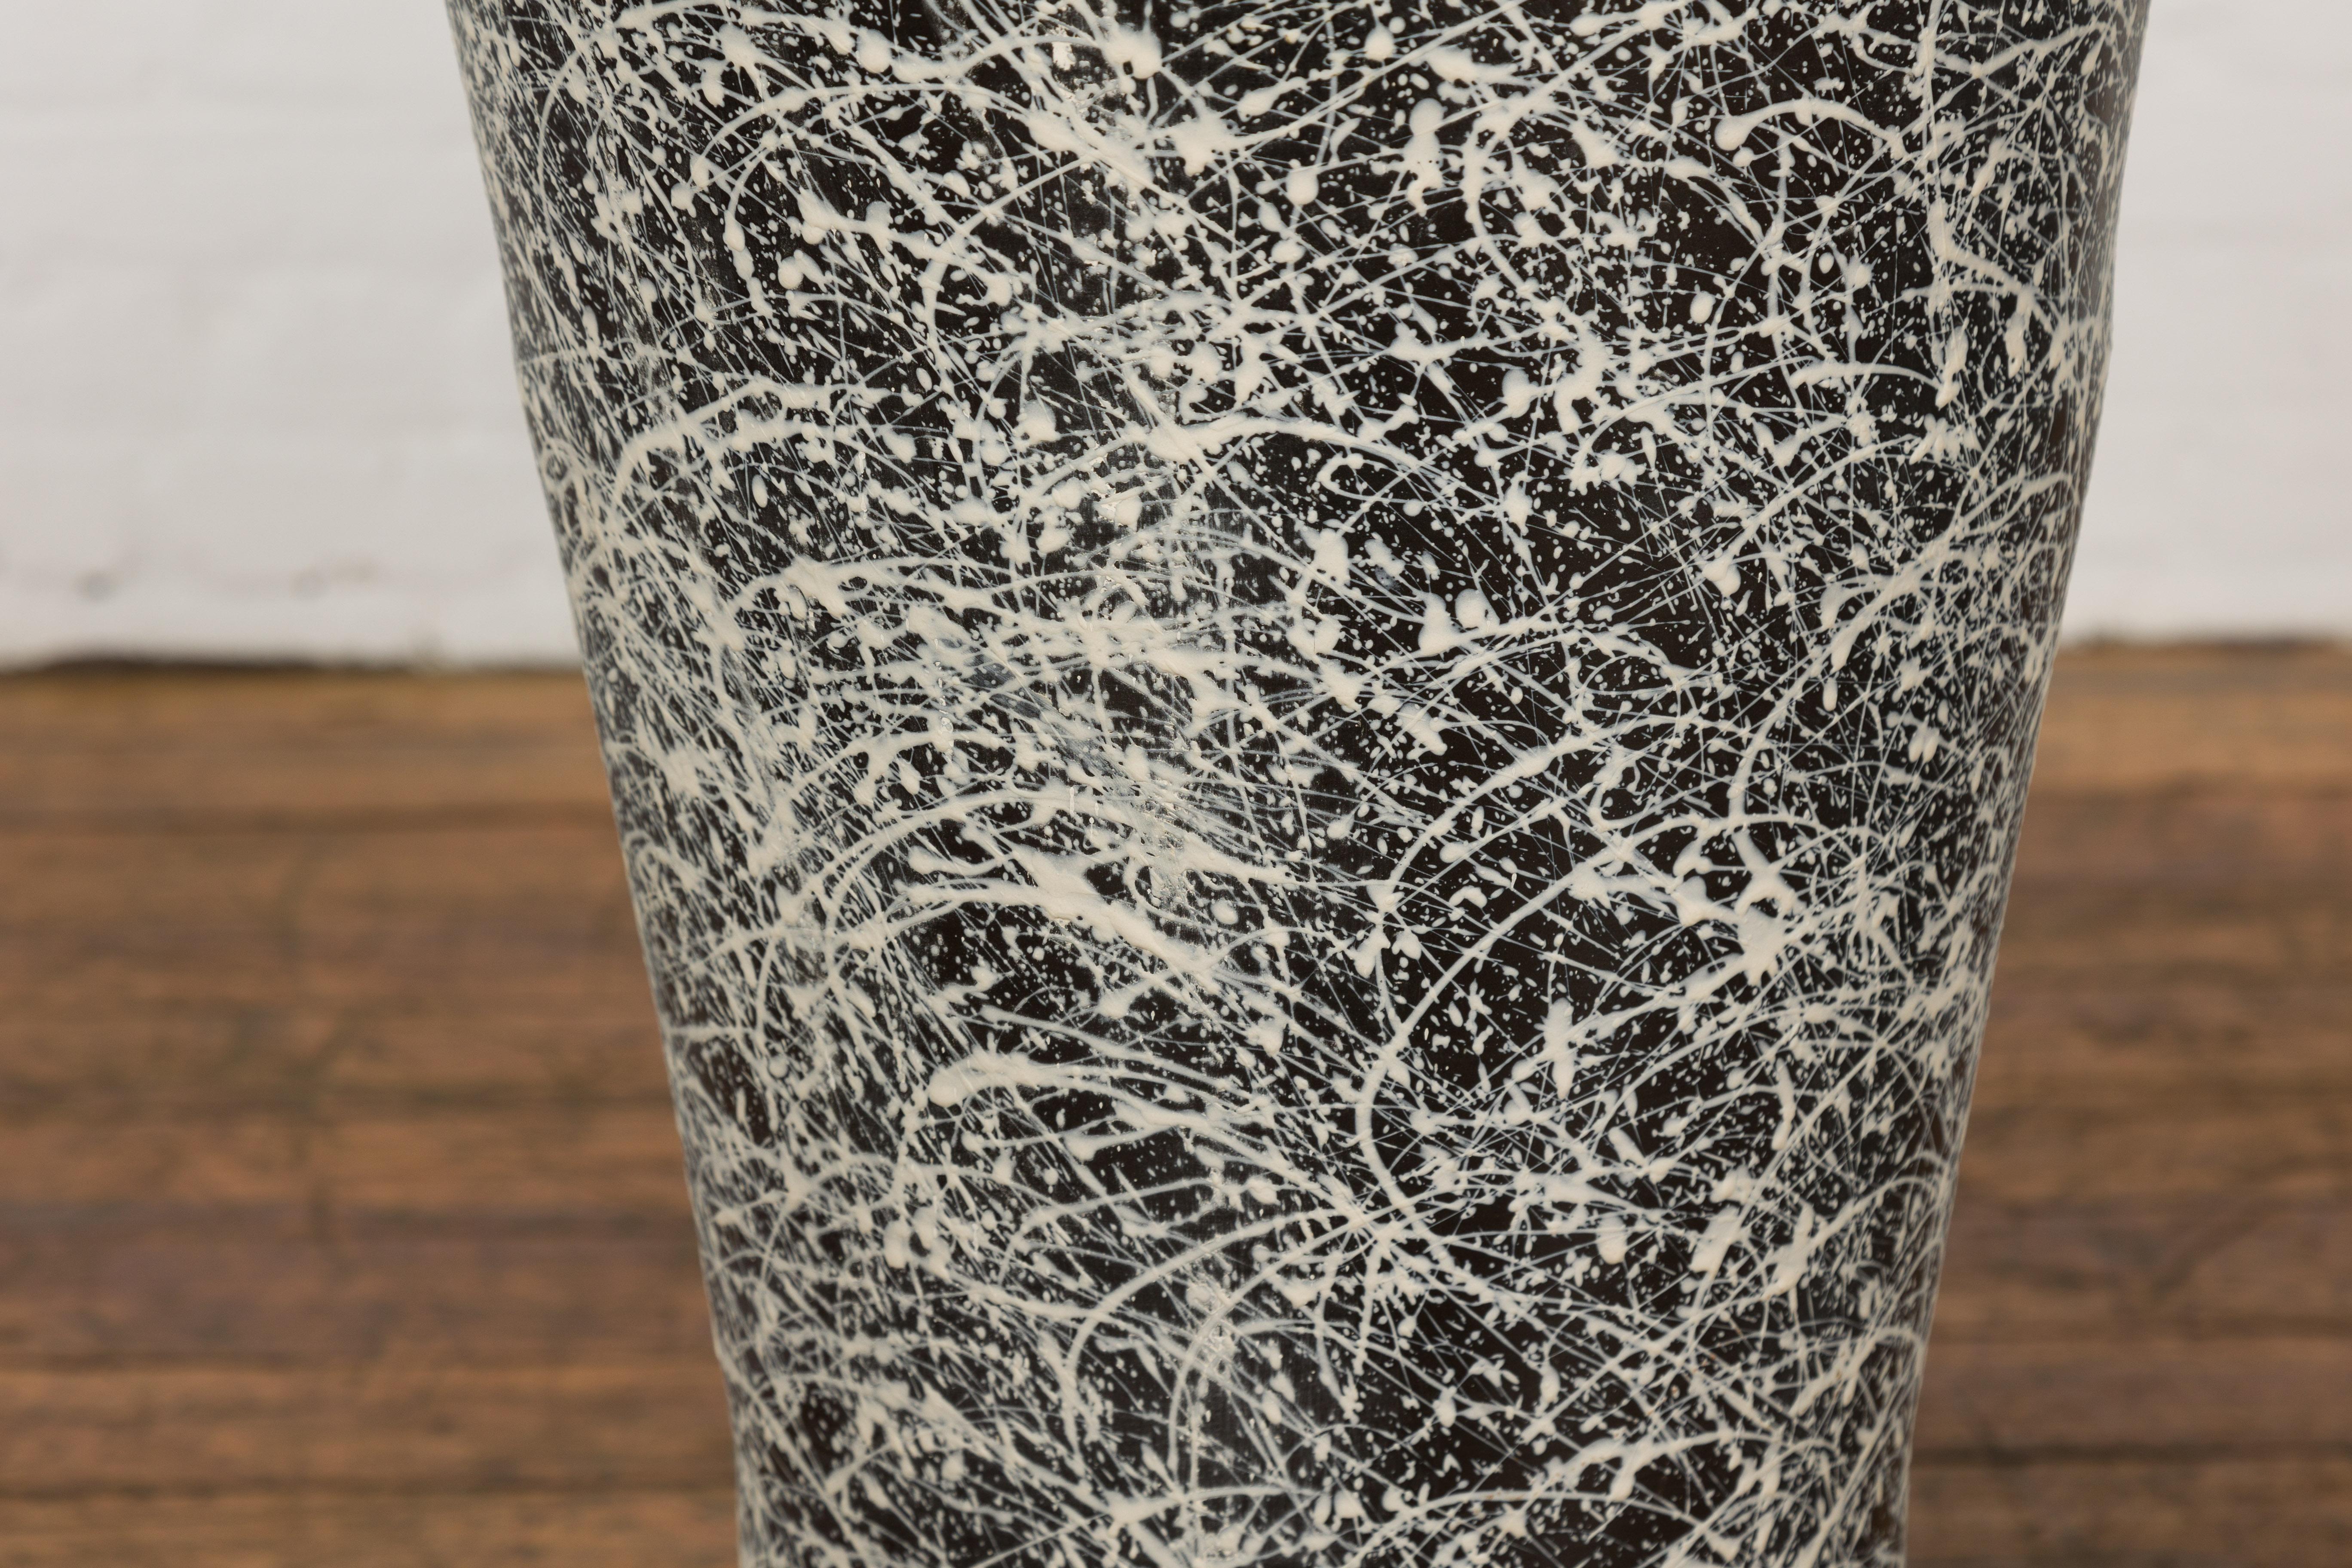 Pair of Textured Black & White Spattered Ceramic Vases For Sale 6